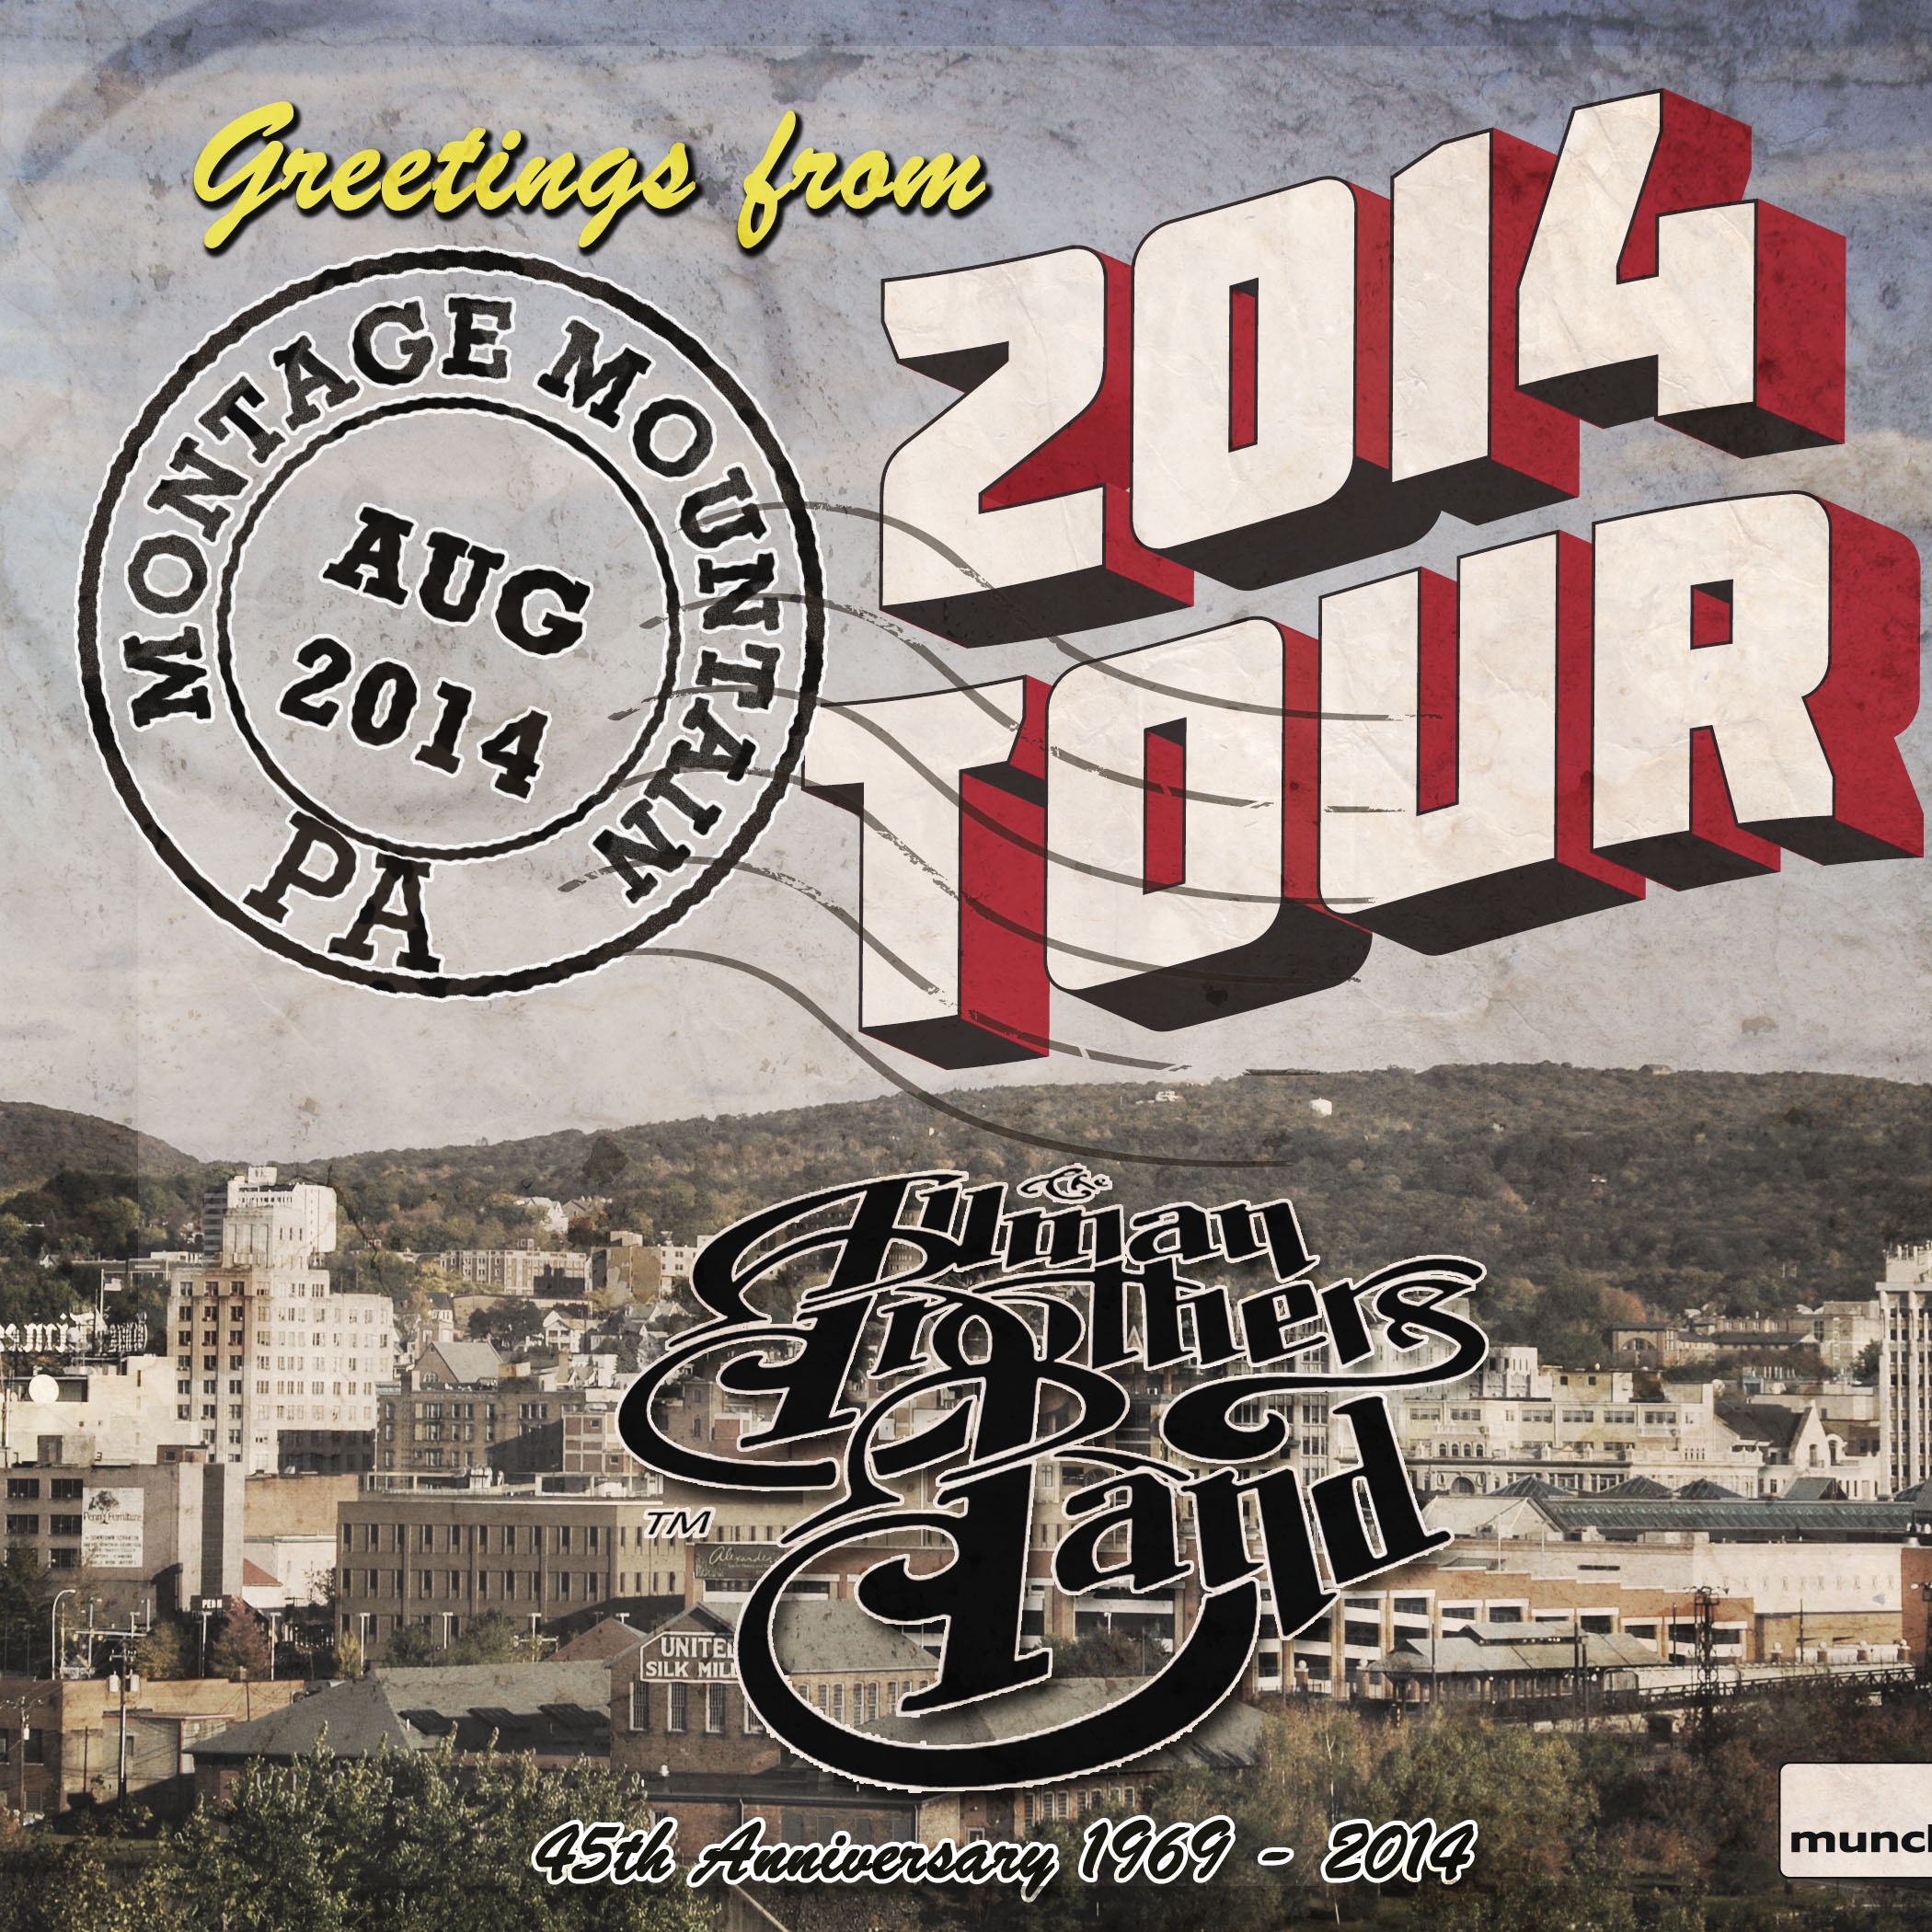 2014/08/17 Montage Mountain, PA